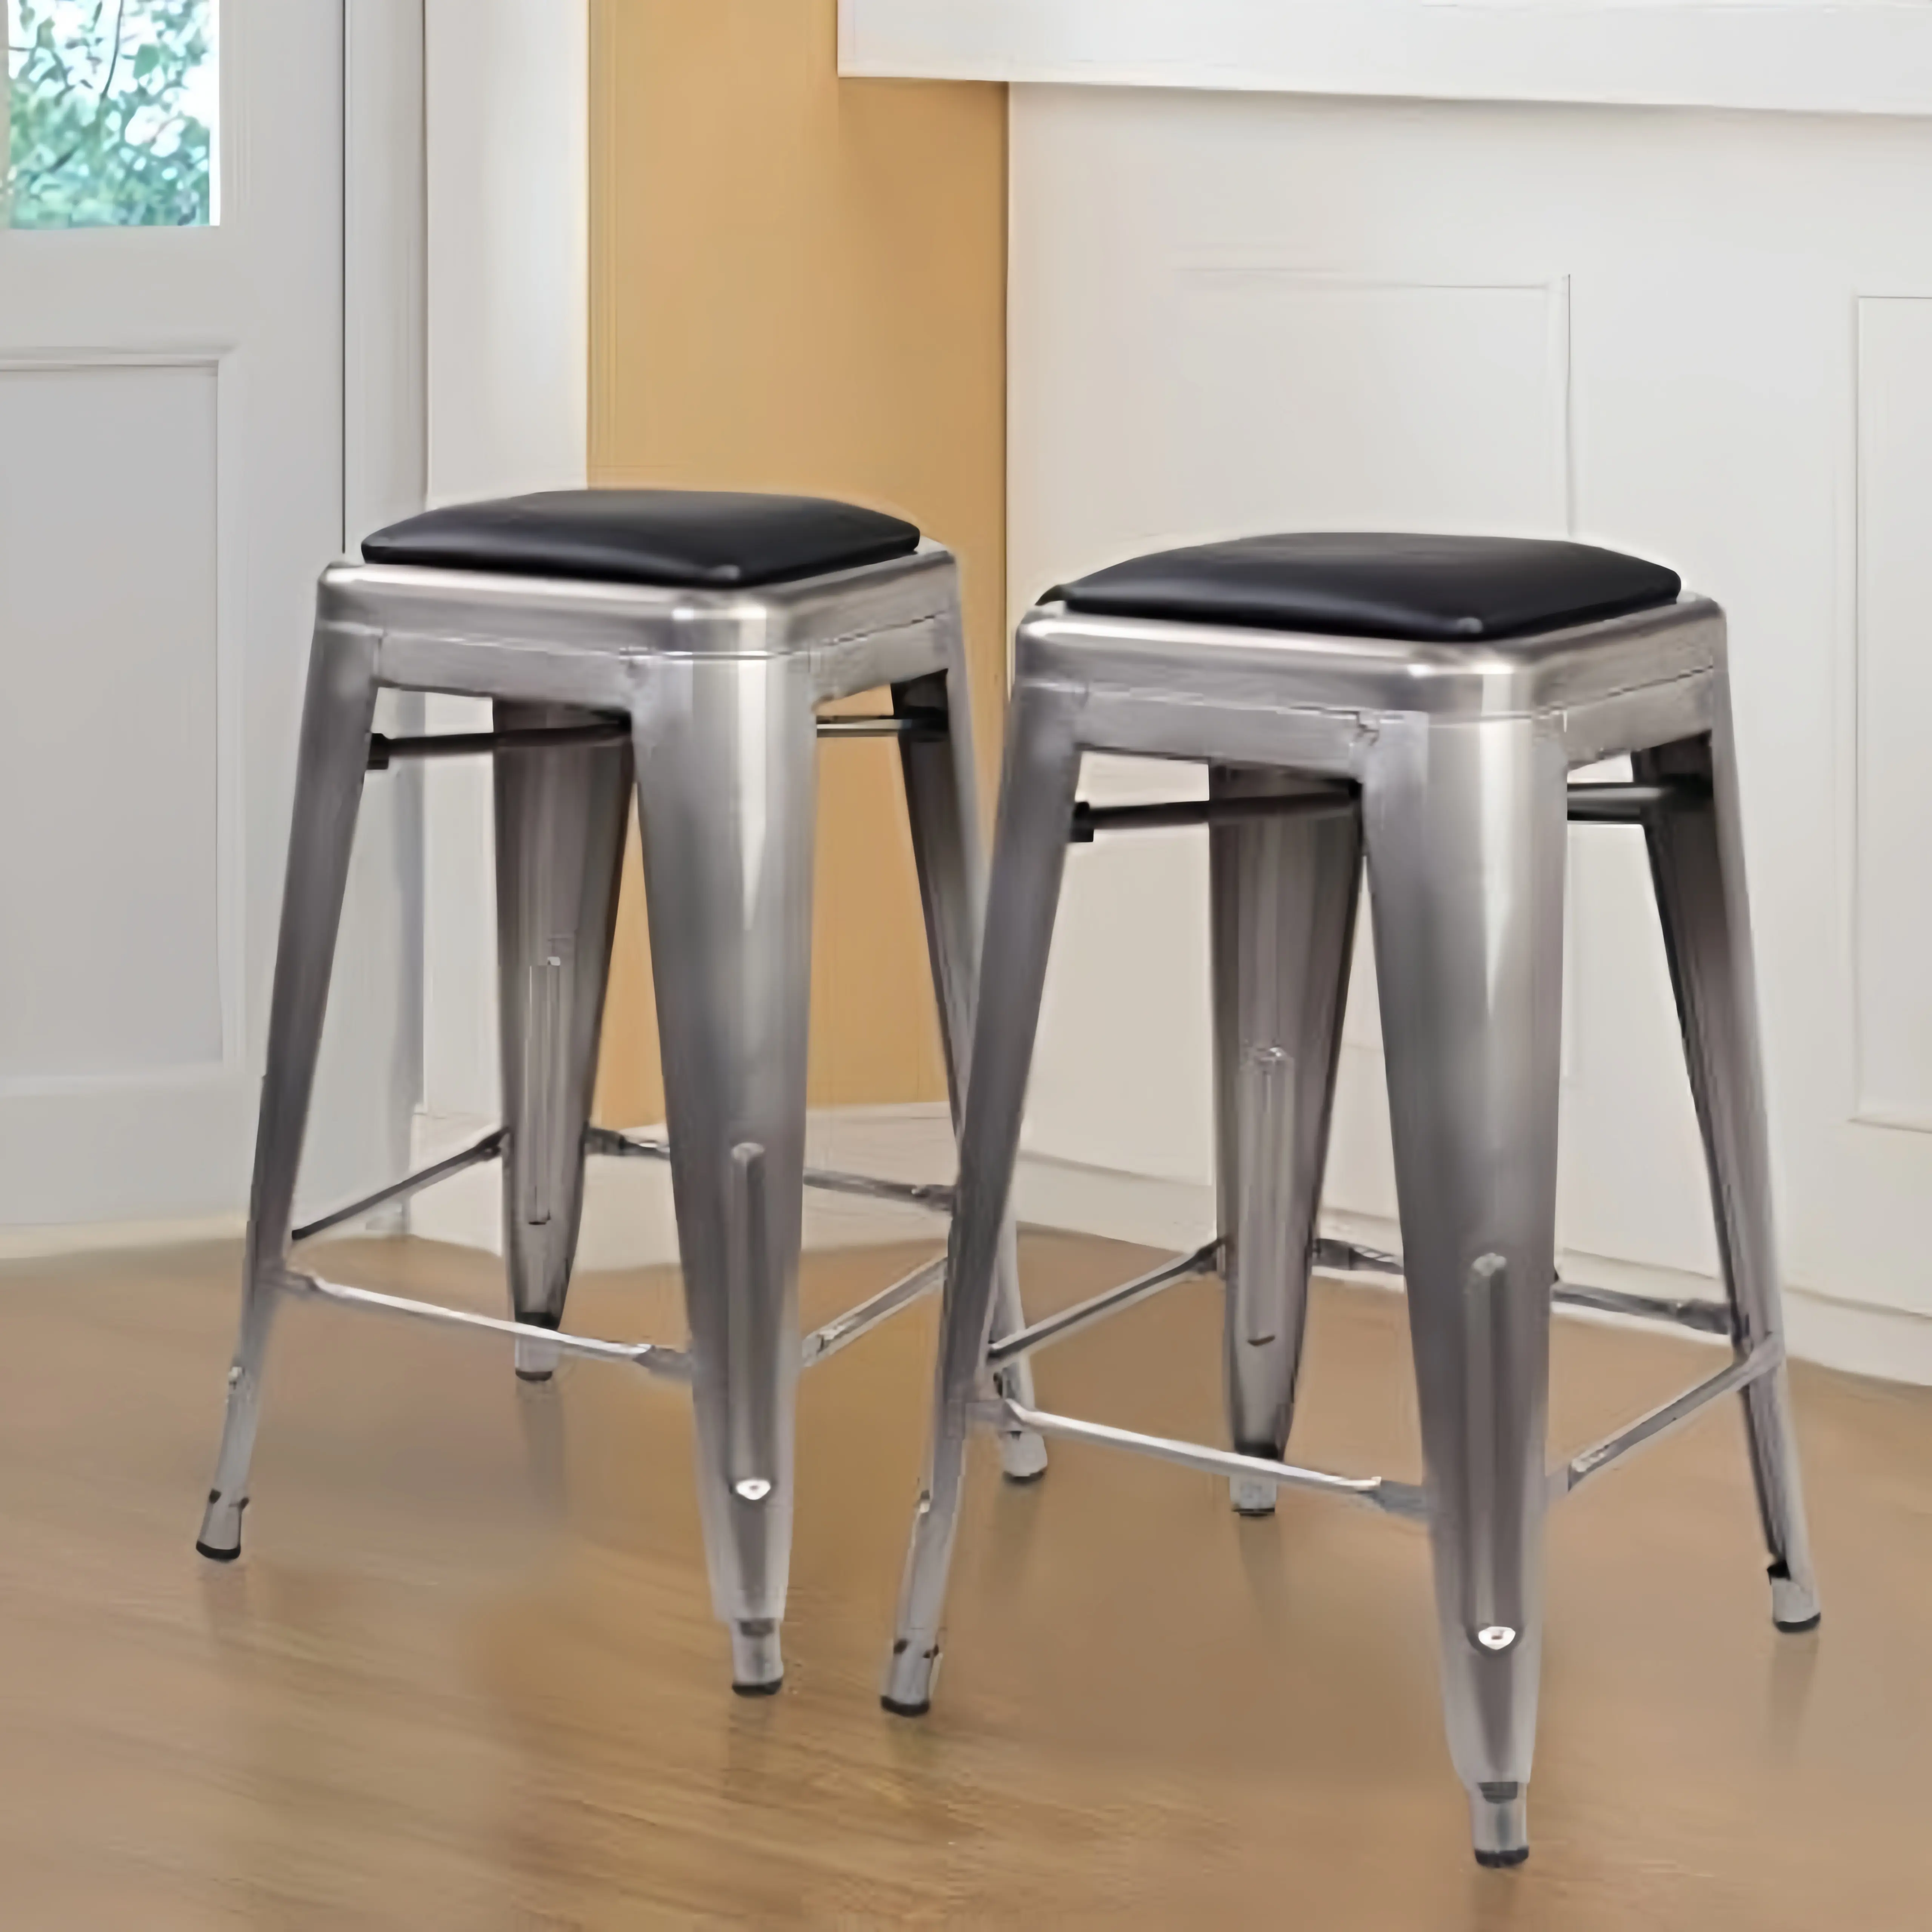 Recomendar Preço barato Cadeiras de cozinha com estrutura de metal moderno para café da manhã bancos industriais bancos de bar cadeiras de bar